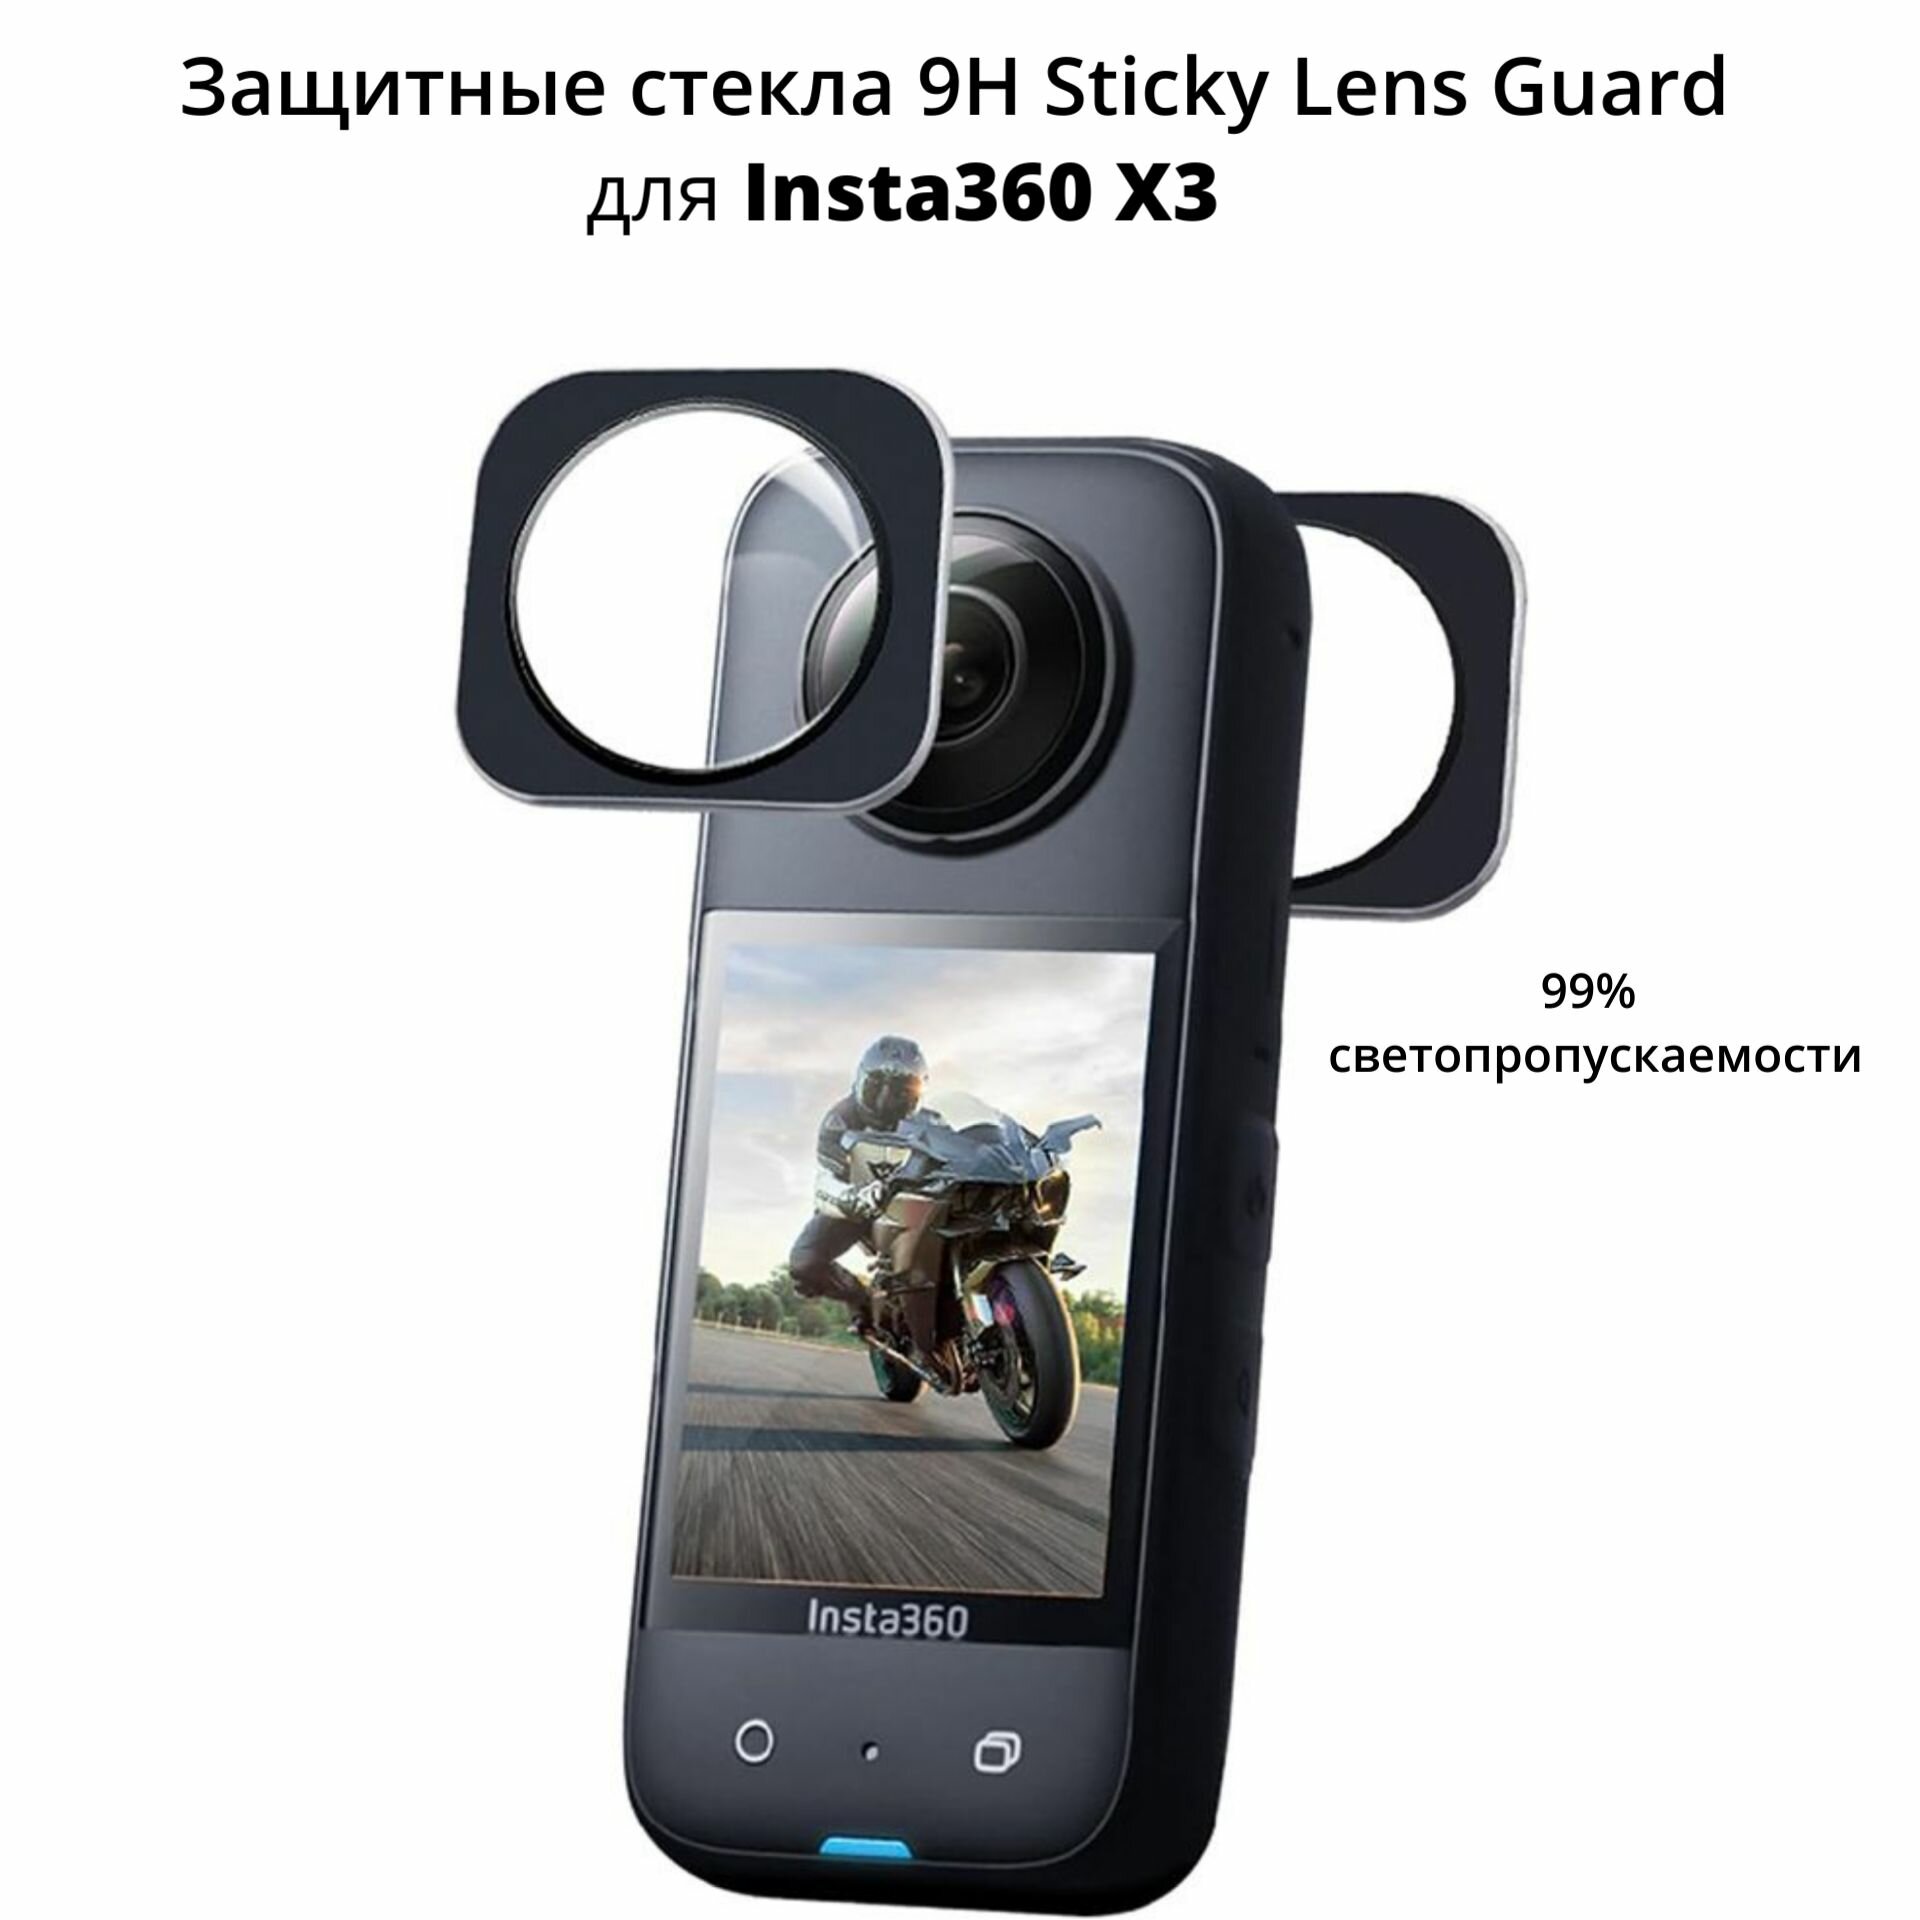 Комплект защитных линз/стекло 9H Sticky Lens Guard для камеры Insta360 X3